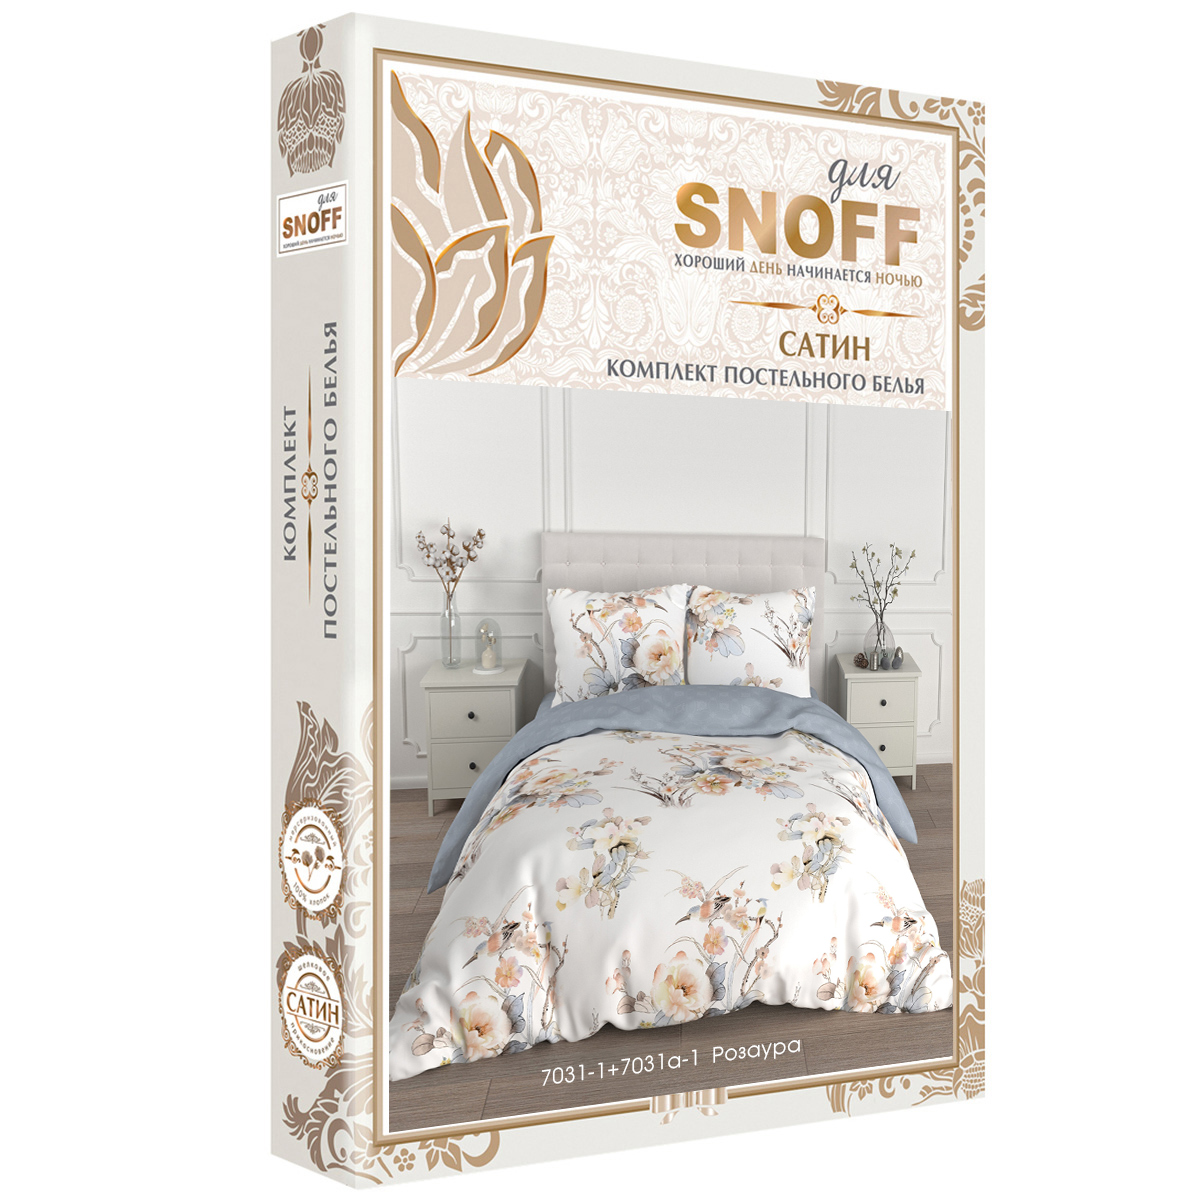 Комплект постельного белья для SNOFF Розаура евро сатин рис.7031-1+7031а-1 - фото 7